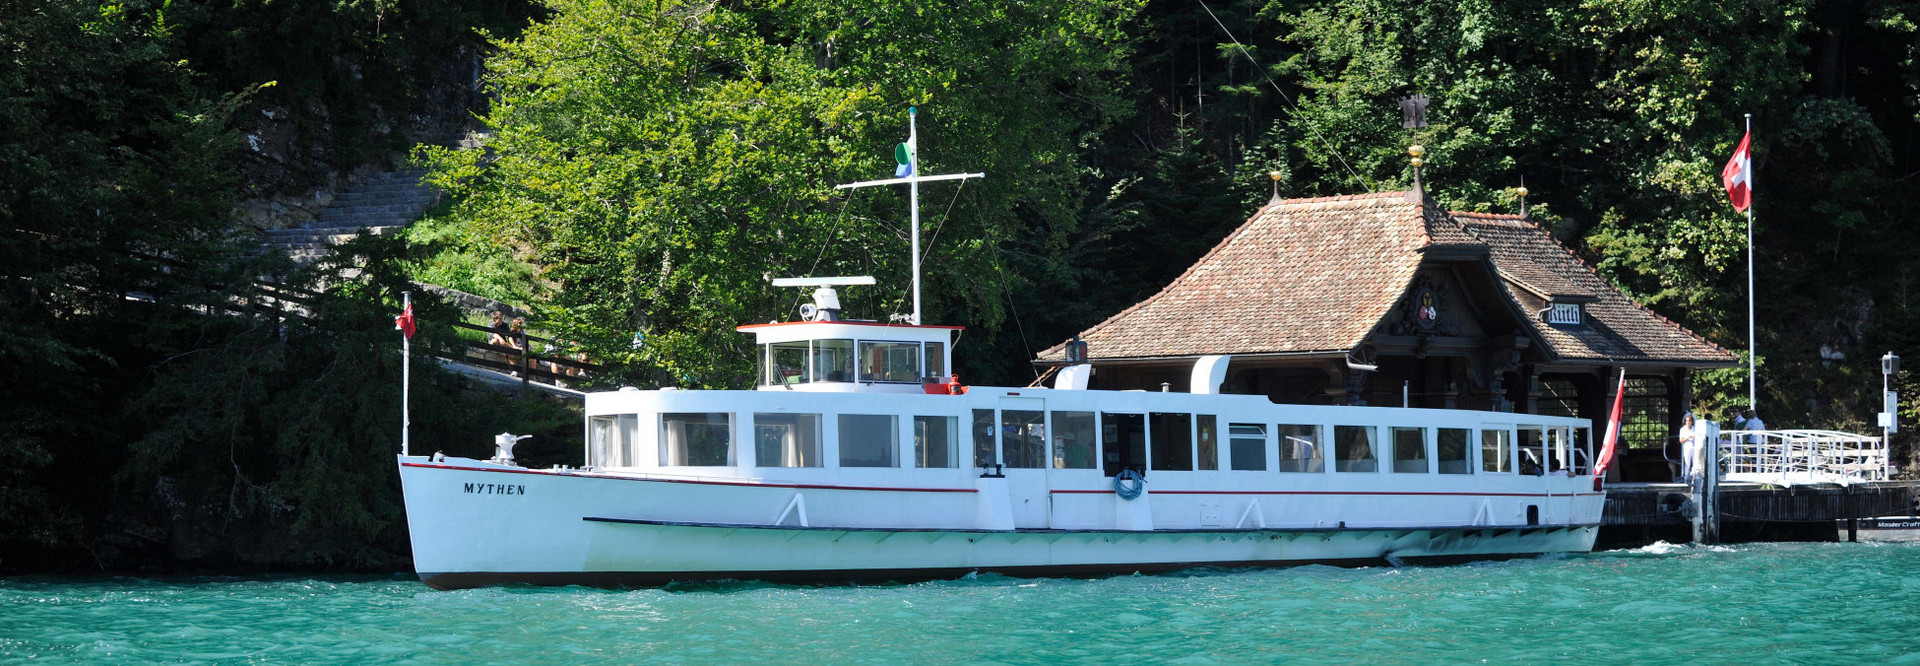 The motor vessel Mythen sails on Lake Lucerne in sunny weather.